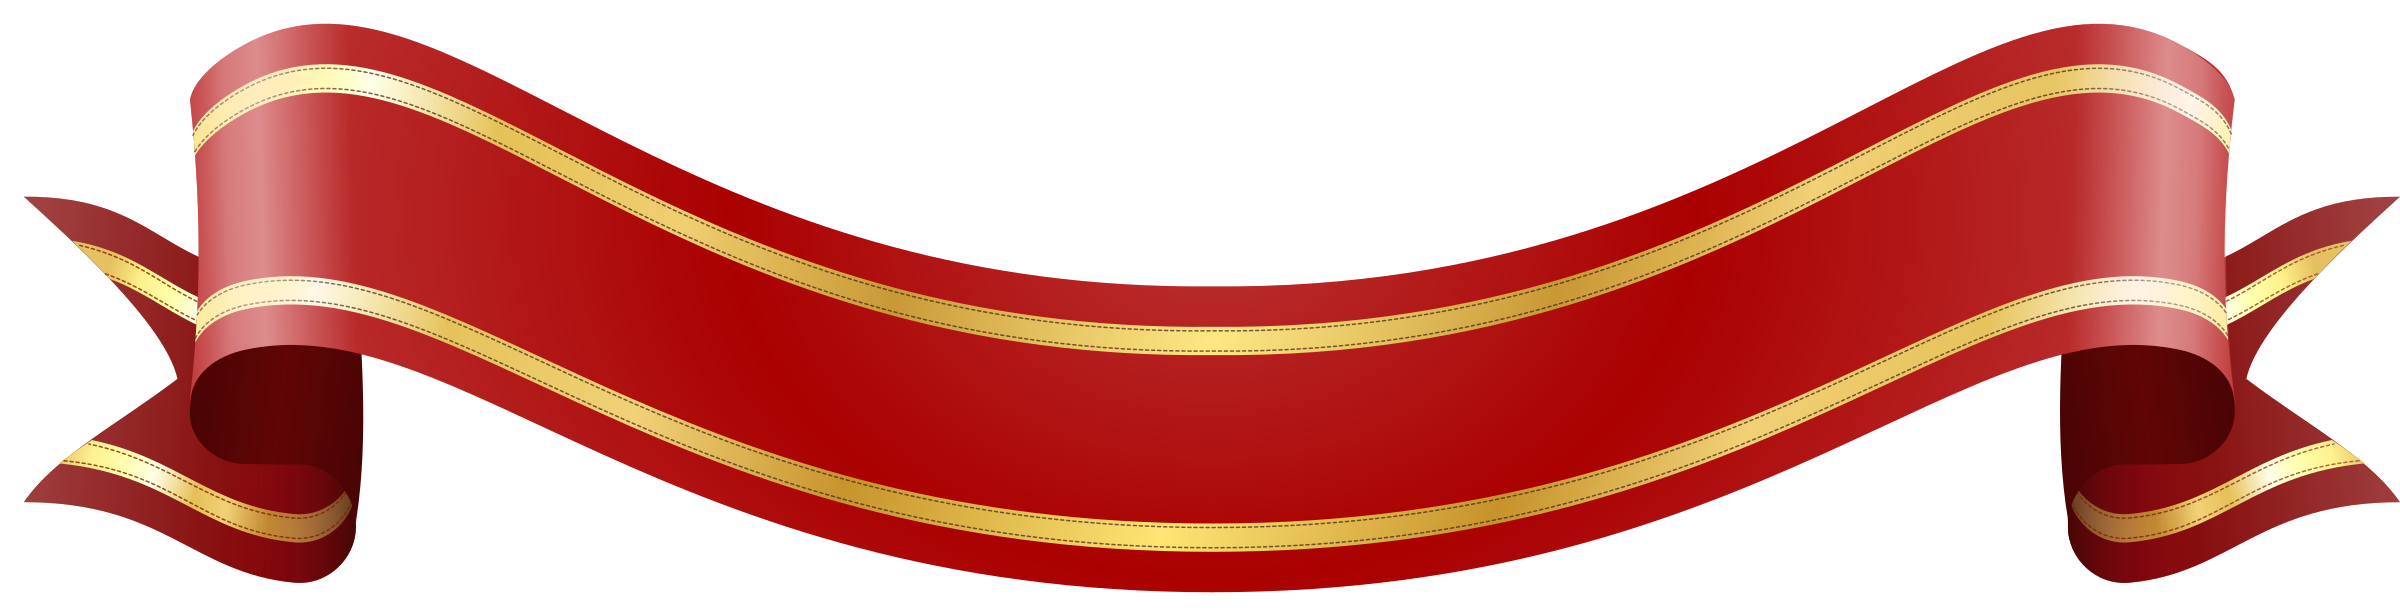 Красный баннер бесплатно PNG Image